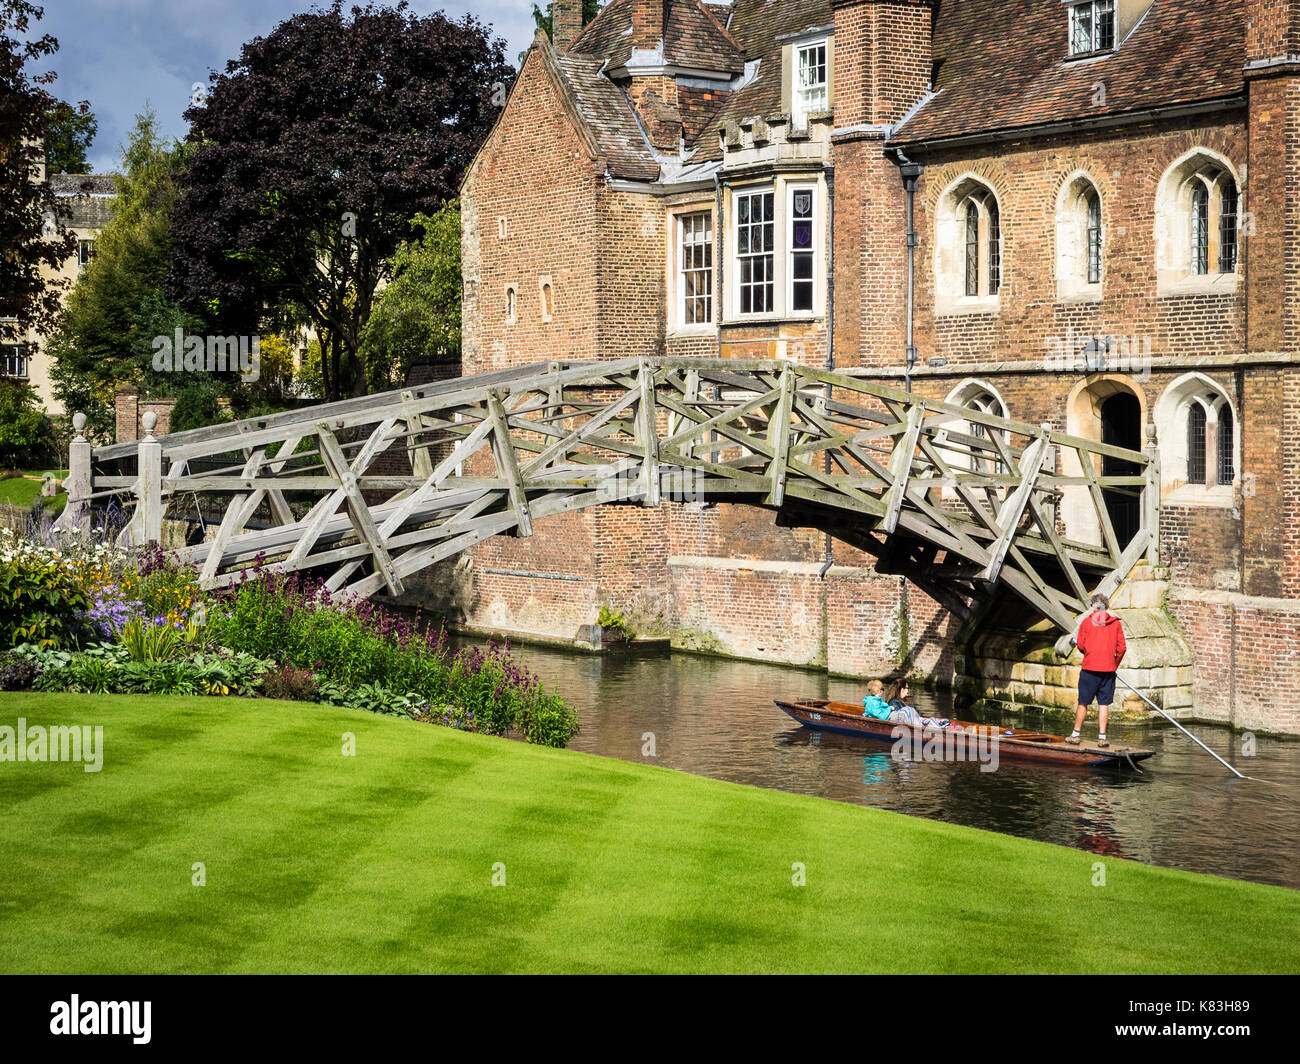 Cambridge Tourismus - Mathematische Brücke - Queens College. Touristen Punt unter der mathematische Brücke in Queens College, Teil der Universität Cambridge Stockfoto